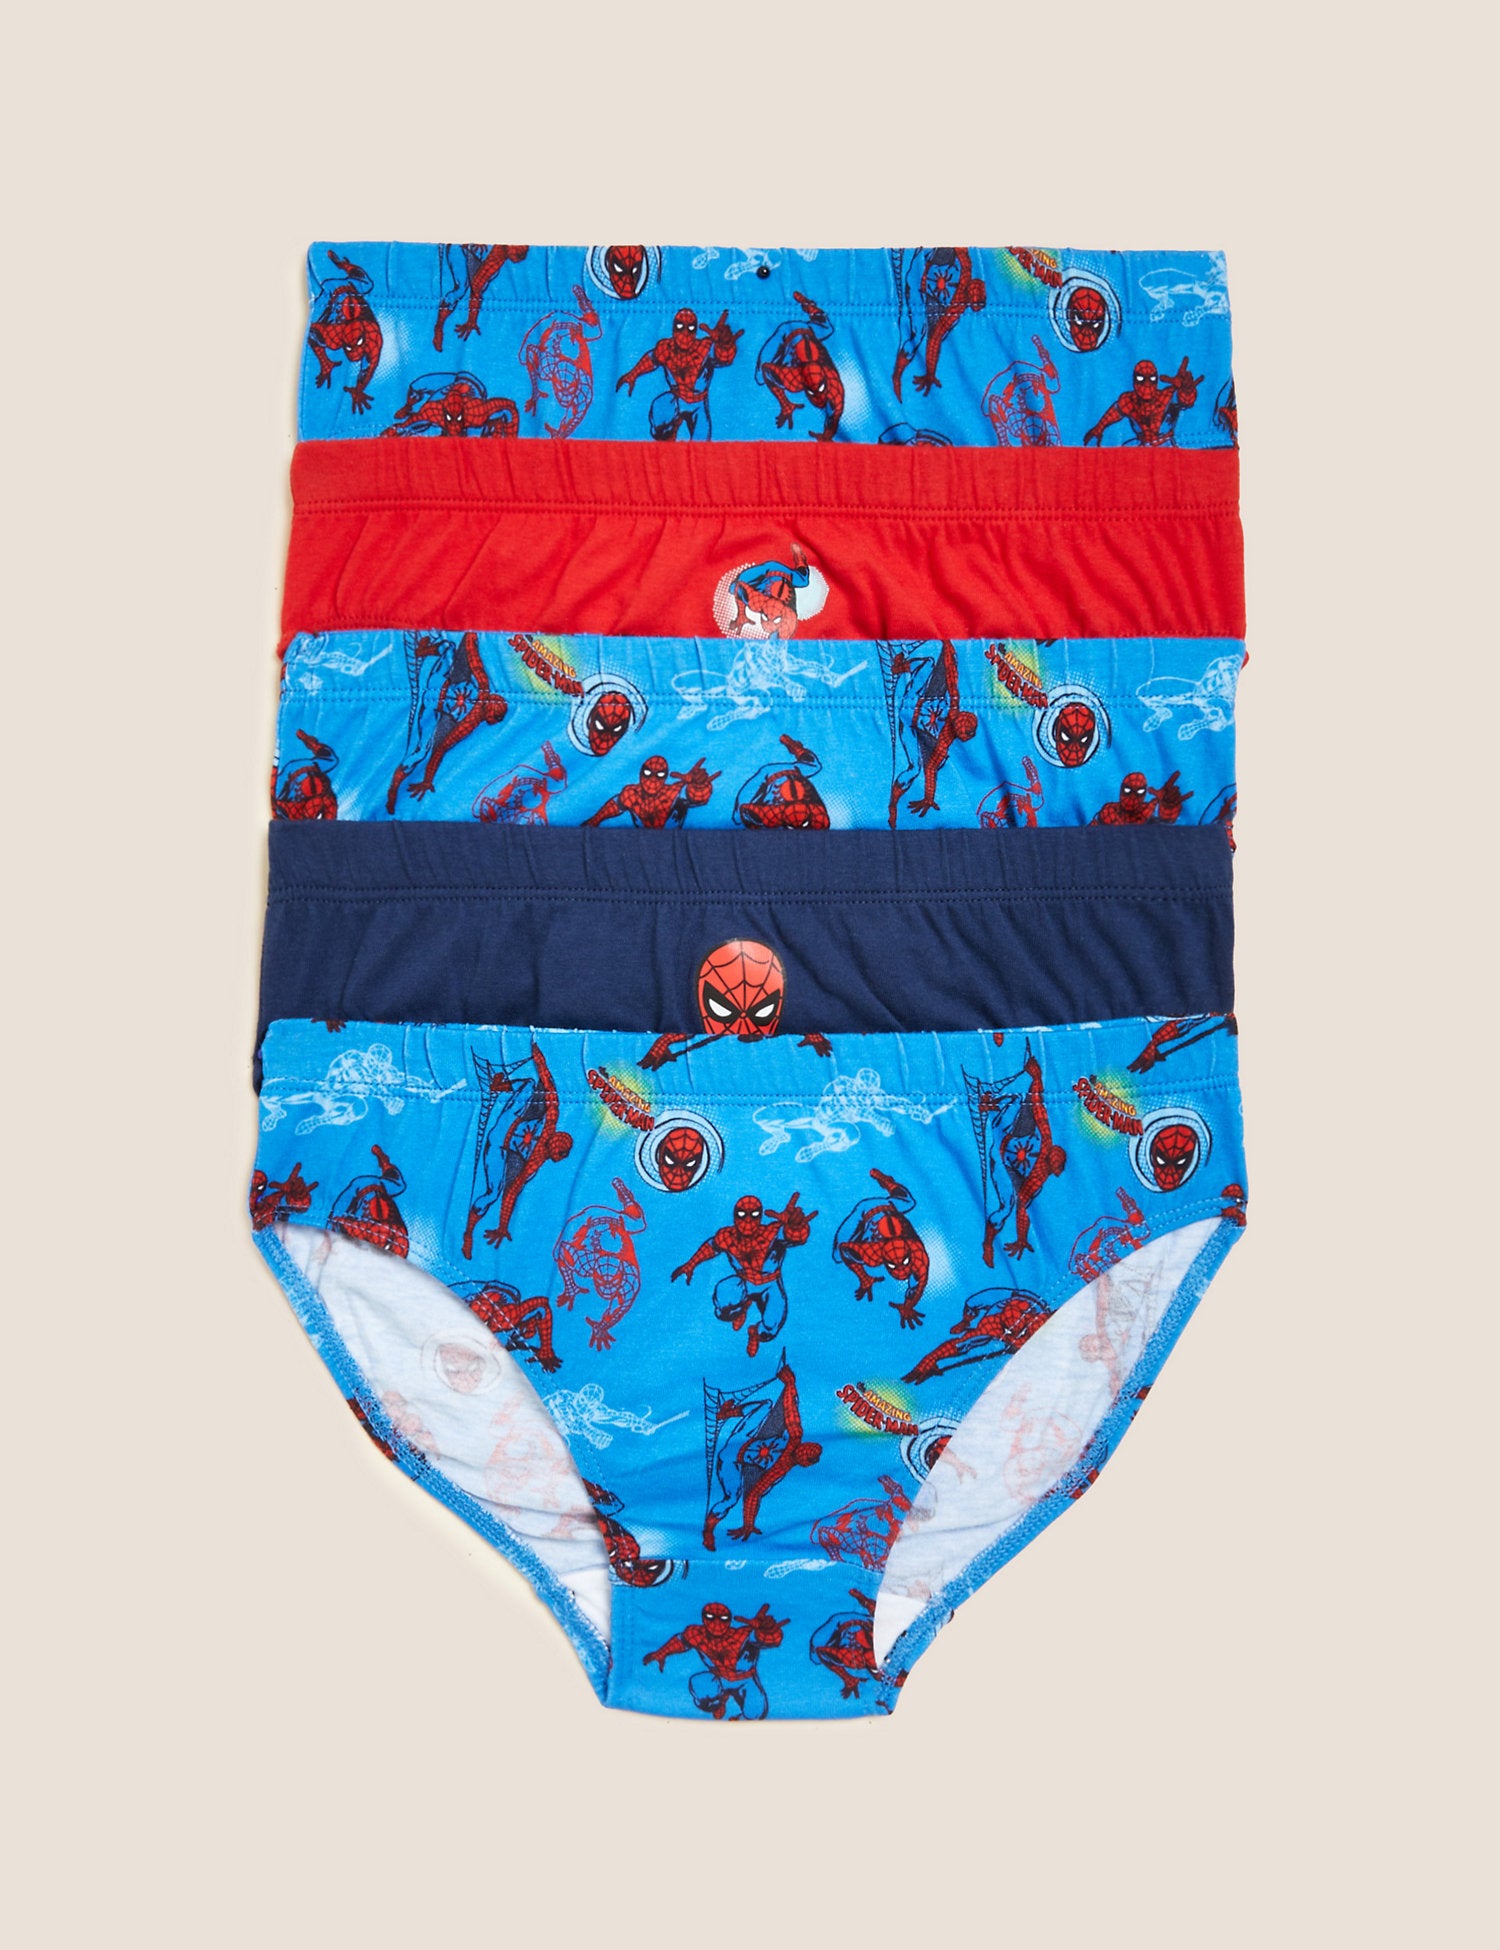 Spiderman Underwear -  Canada